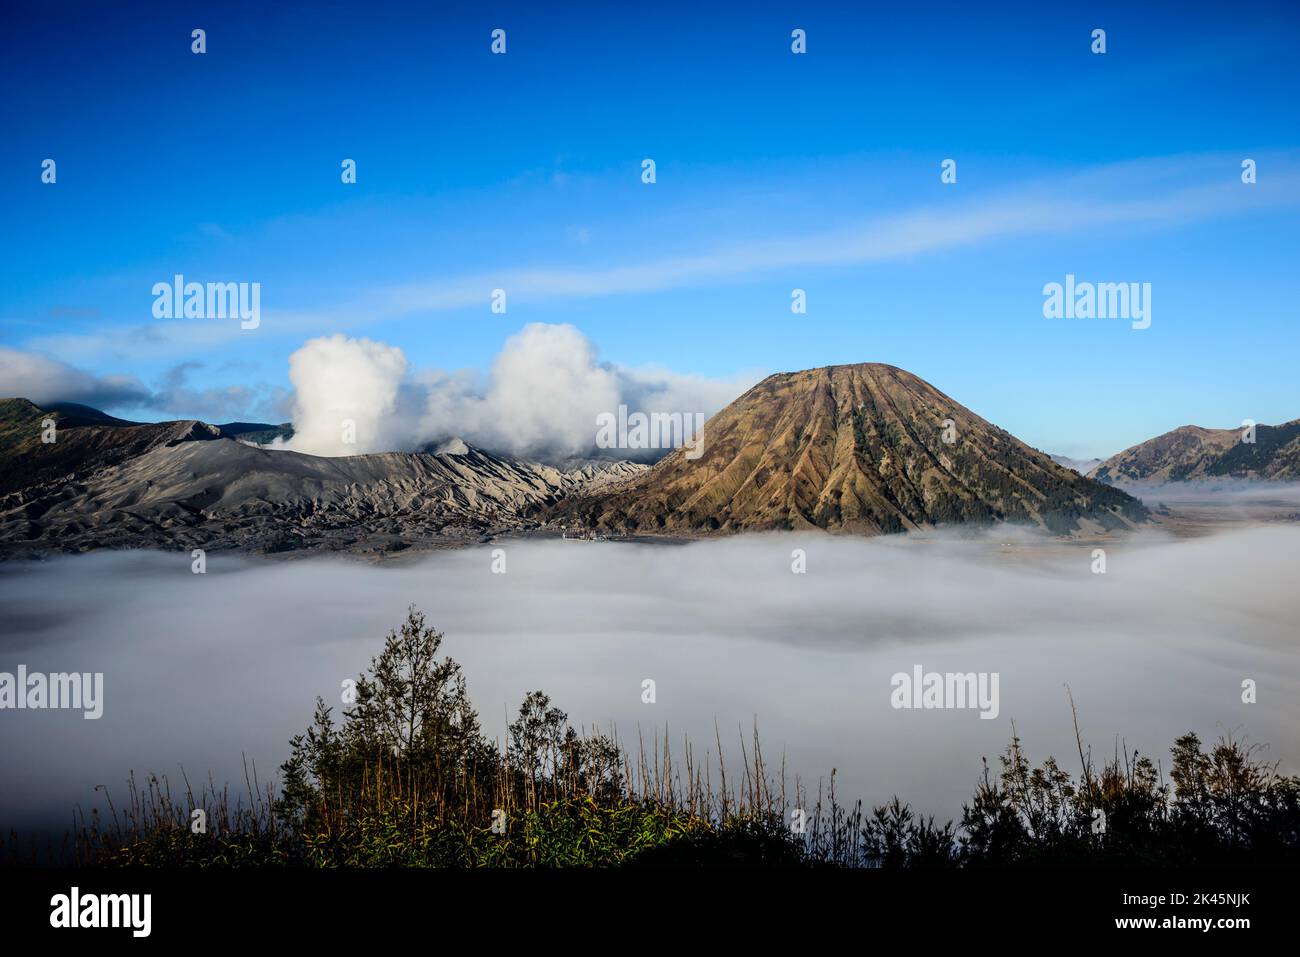 Monte bromo vulcano, un vulcano somma e parte della catena montuosa Tengger, il cono che si erge sopra la bassa nuvola nel paesaggio. Foto Stock